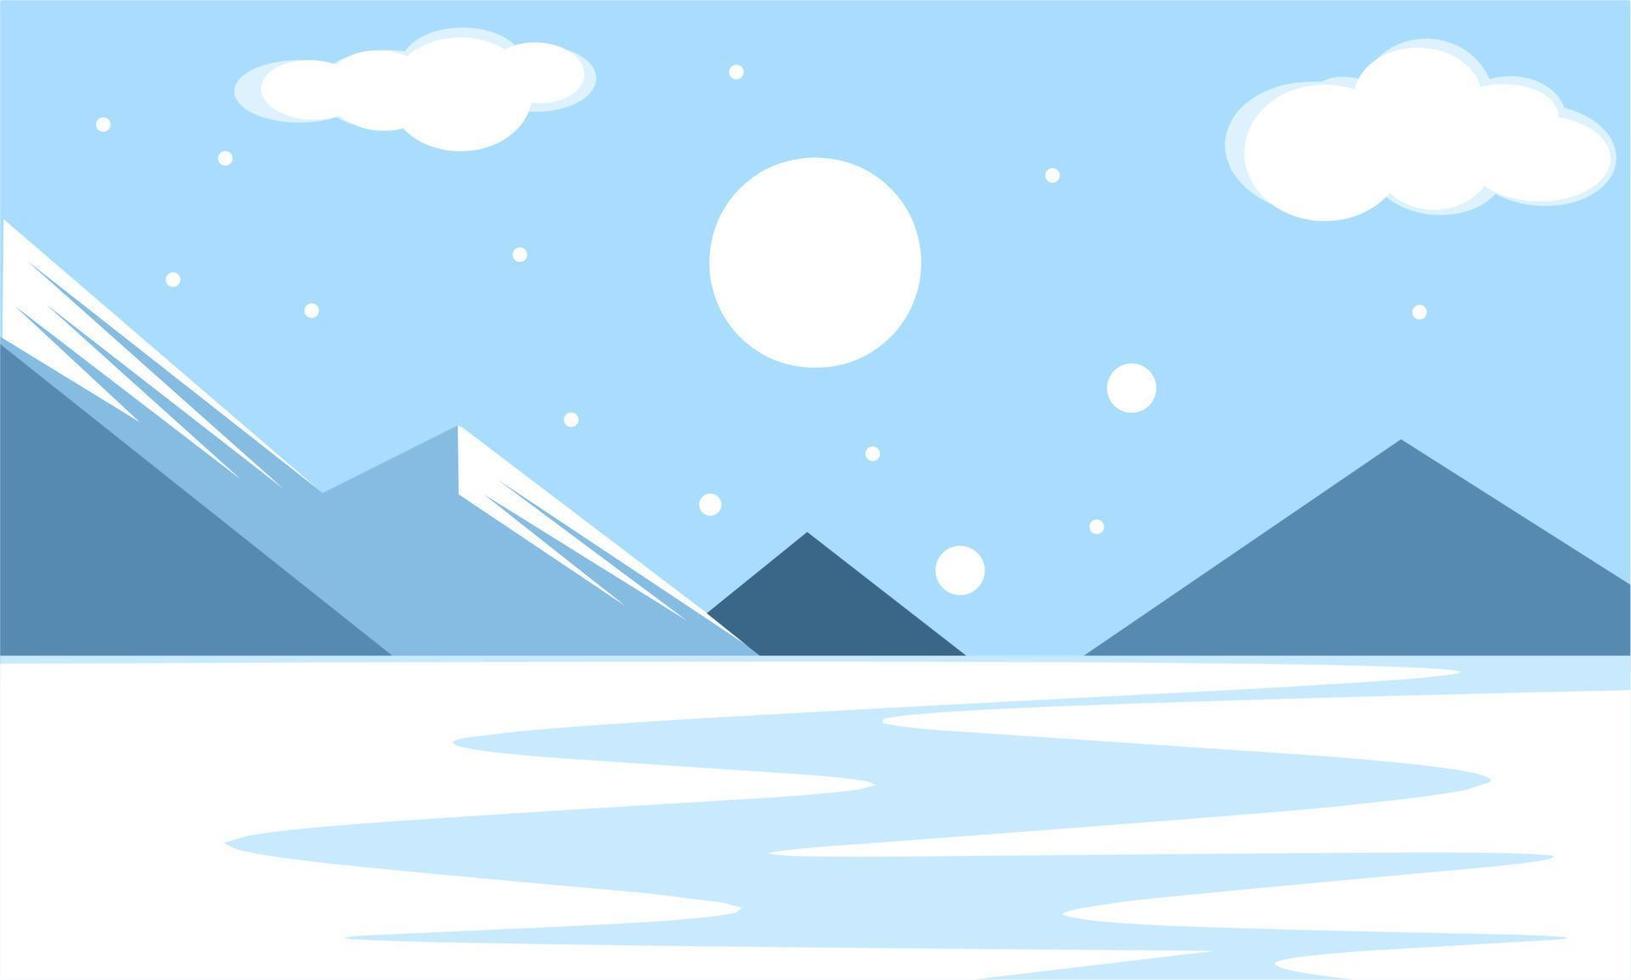 conception d'illustration d'hiver, paysage d'hiver avec concept d'élégance vecteur